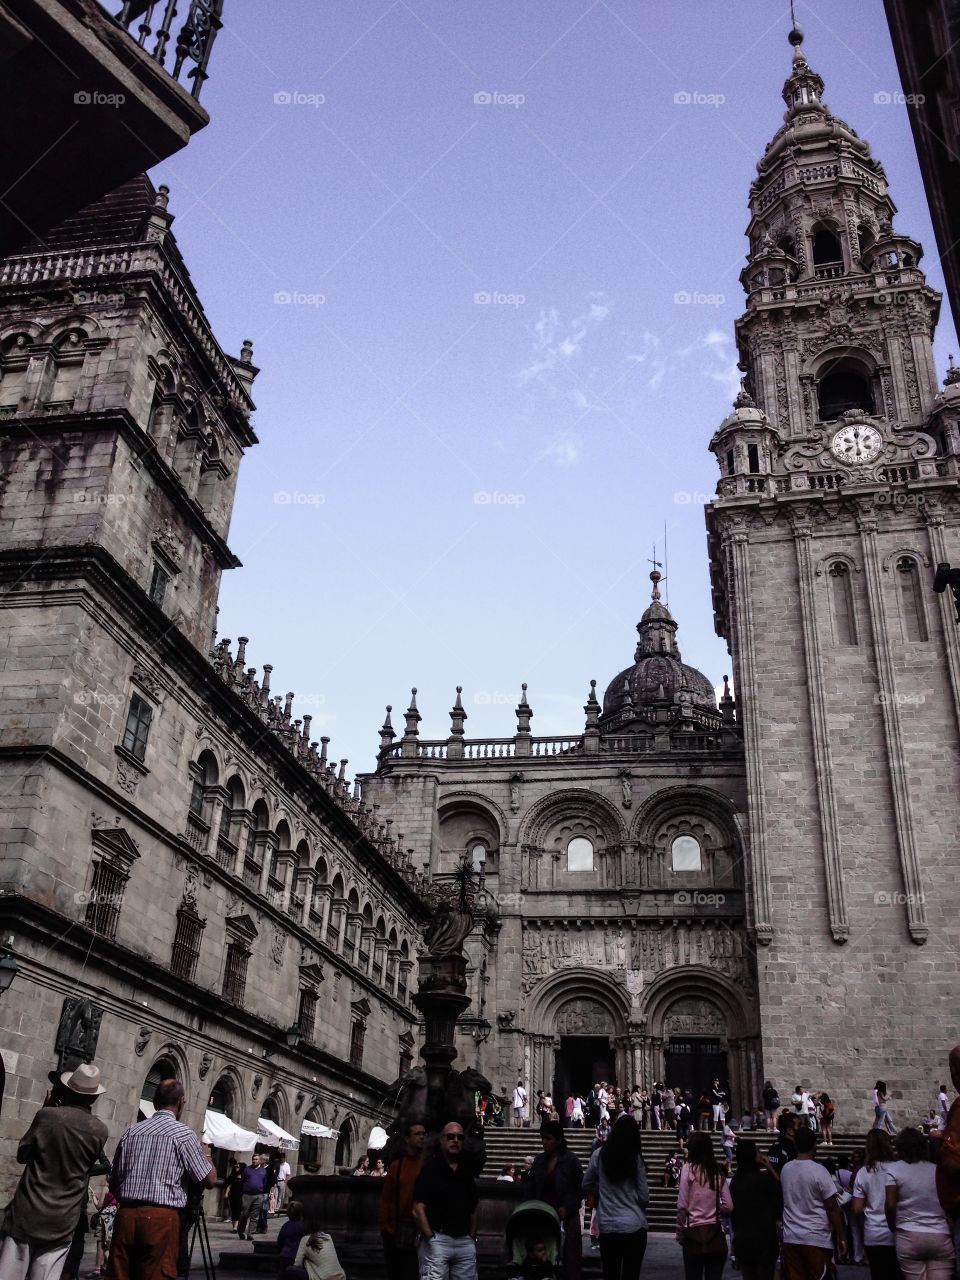 Fachada de las Platerias, Catedral de Santiago de Compostela. Fachada de las Platerias, Catedral de Santiago de Compostela (Santiago de Compostela - Spain)